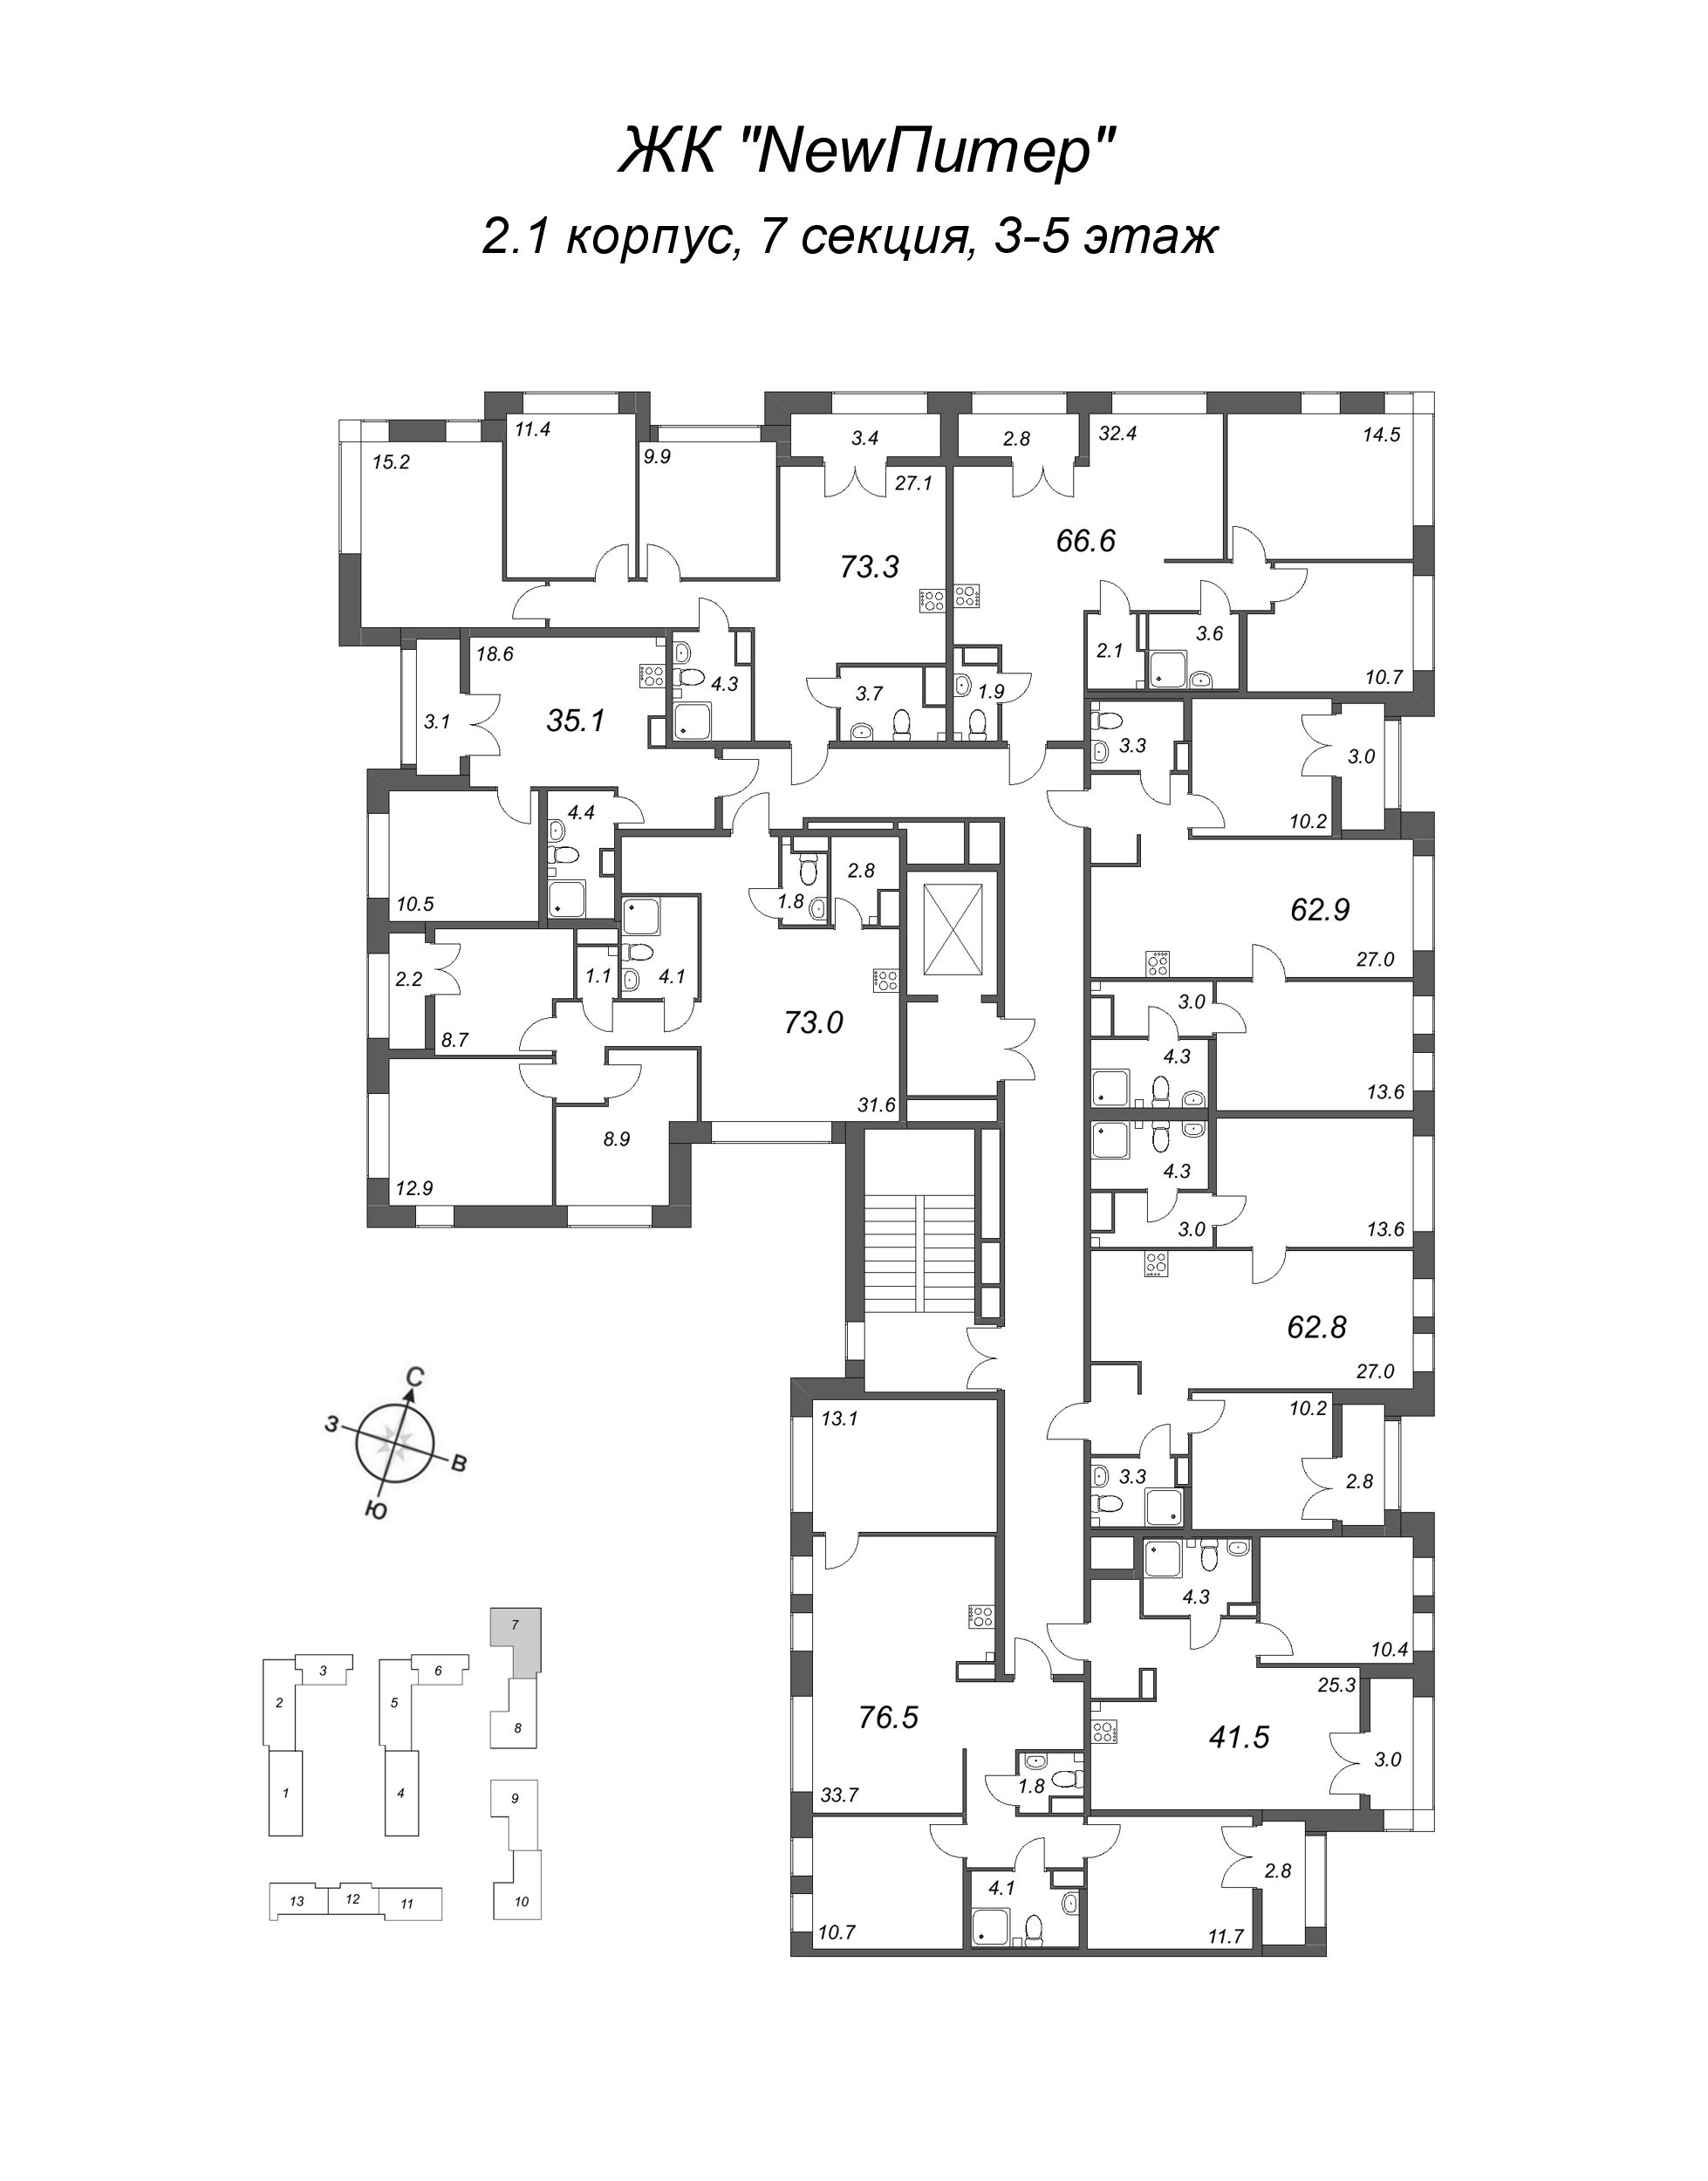 4-комнатная (Евро) квартира, 73 м² в ЖК "NewПитер 2.0" - планировка этажа